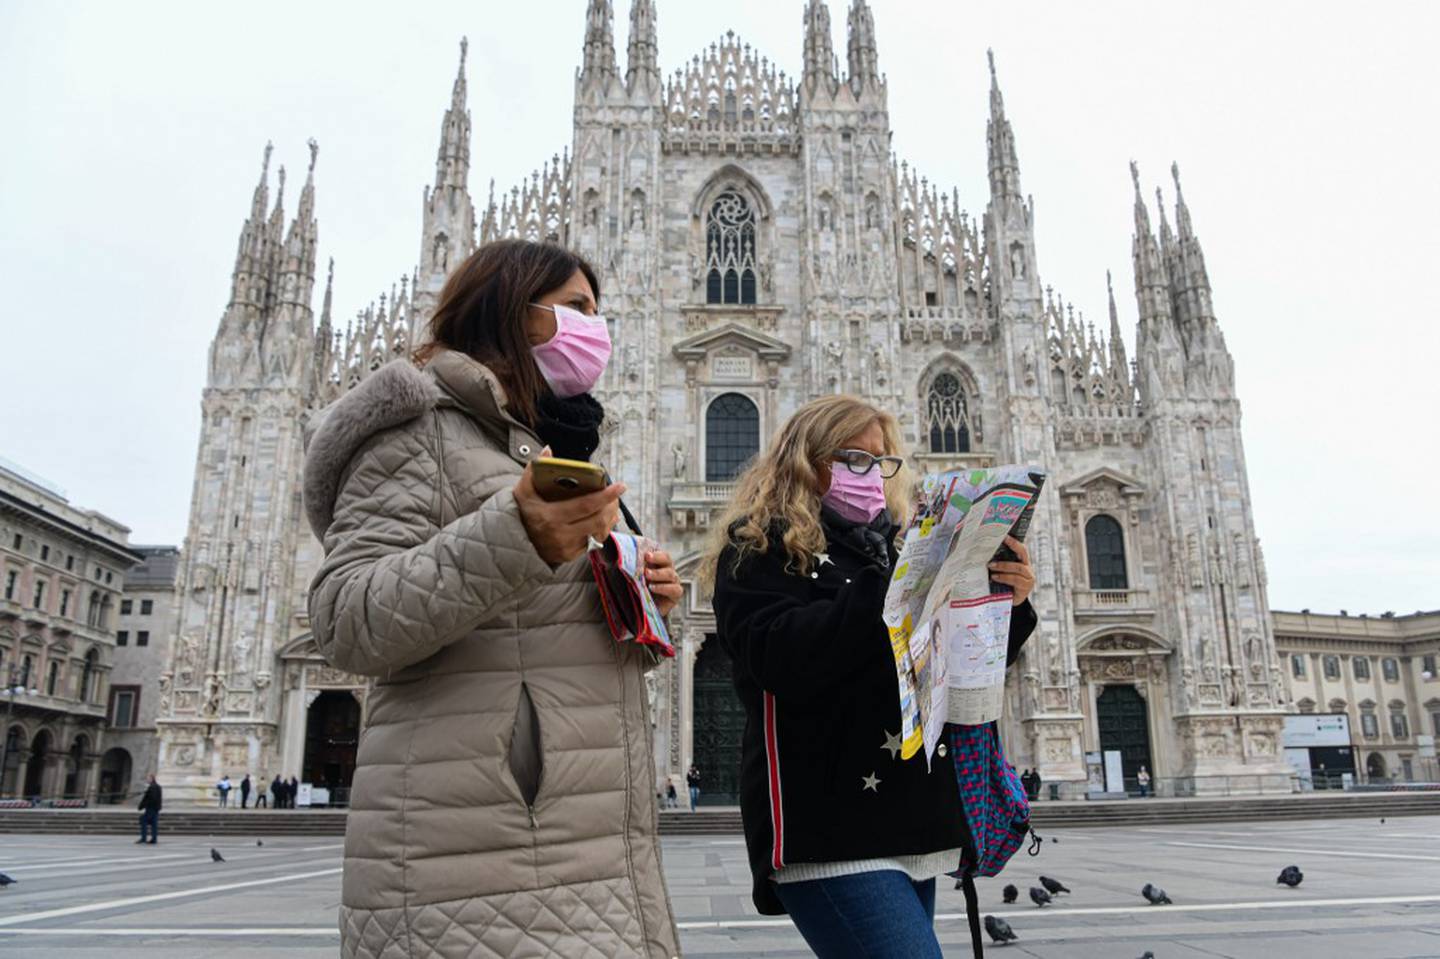 Italia: il paese in cui il virus Corona si è moltiplicato più velocemente, perché?